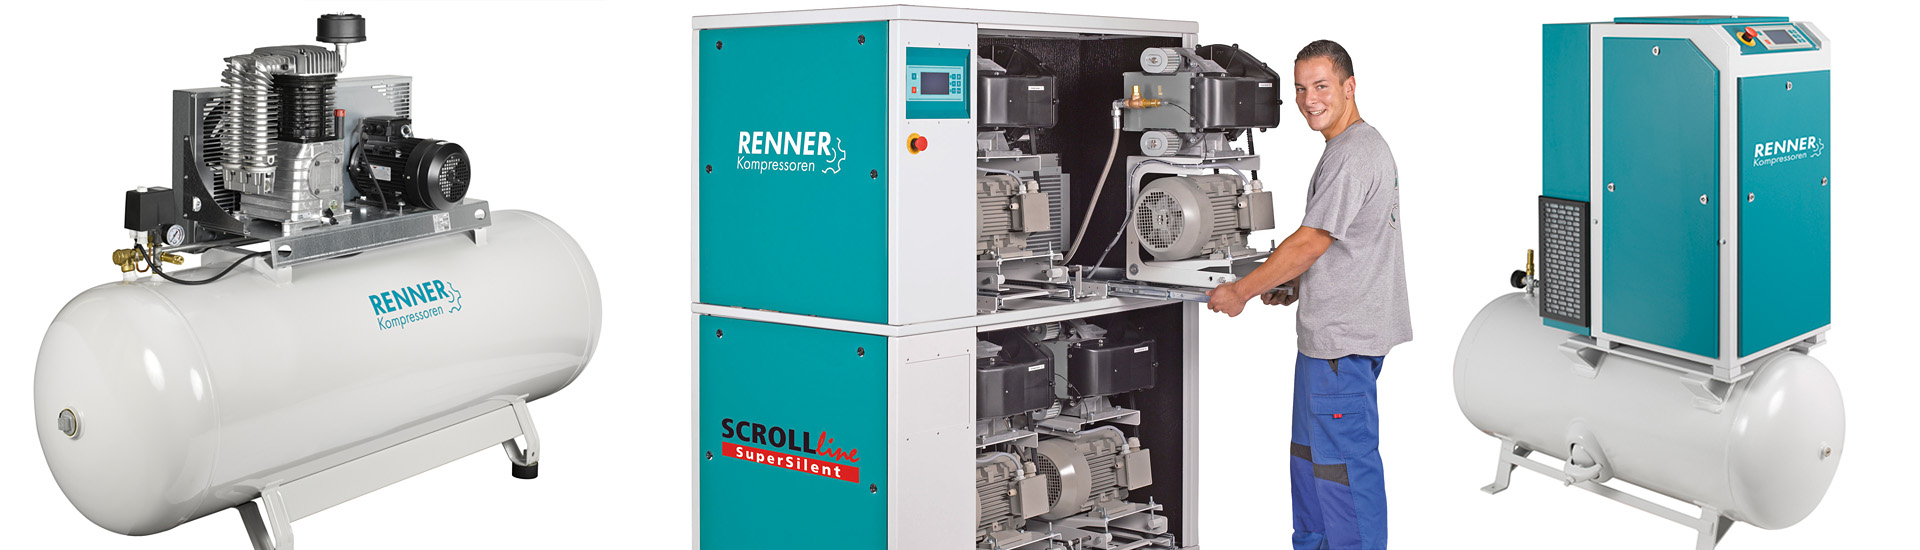 Renner Compressors North East Pneumatics & Hydraulics